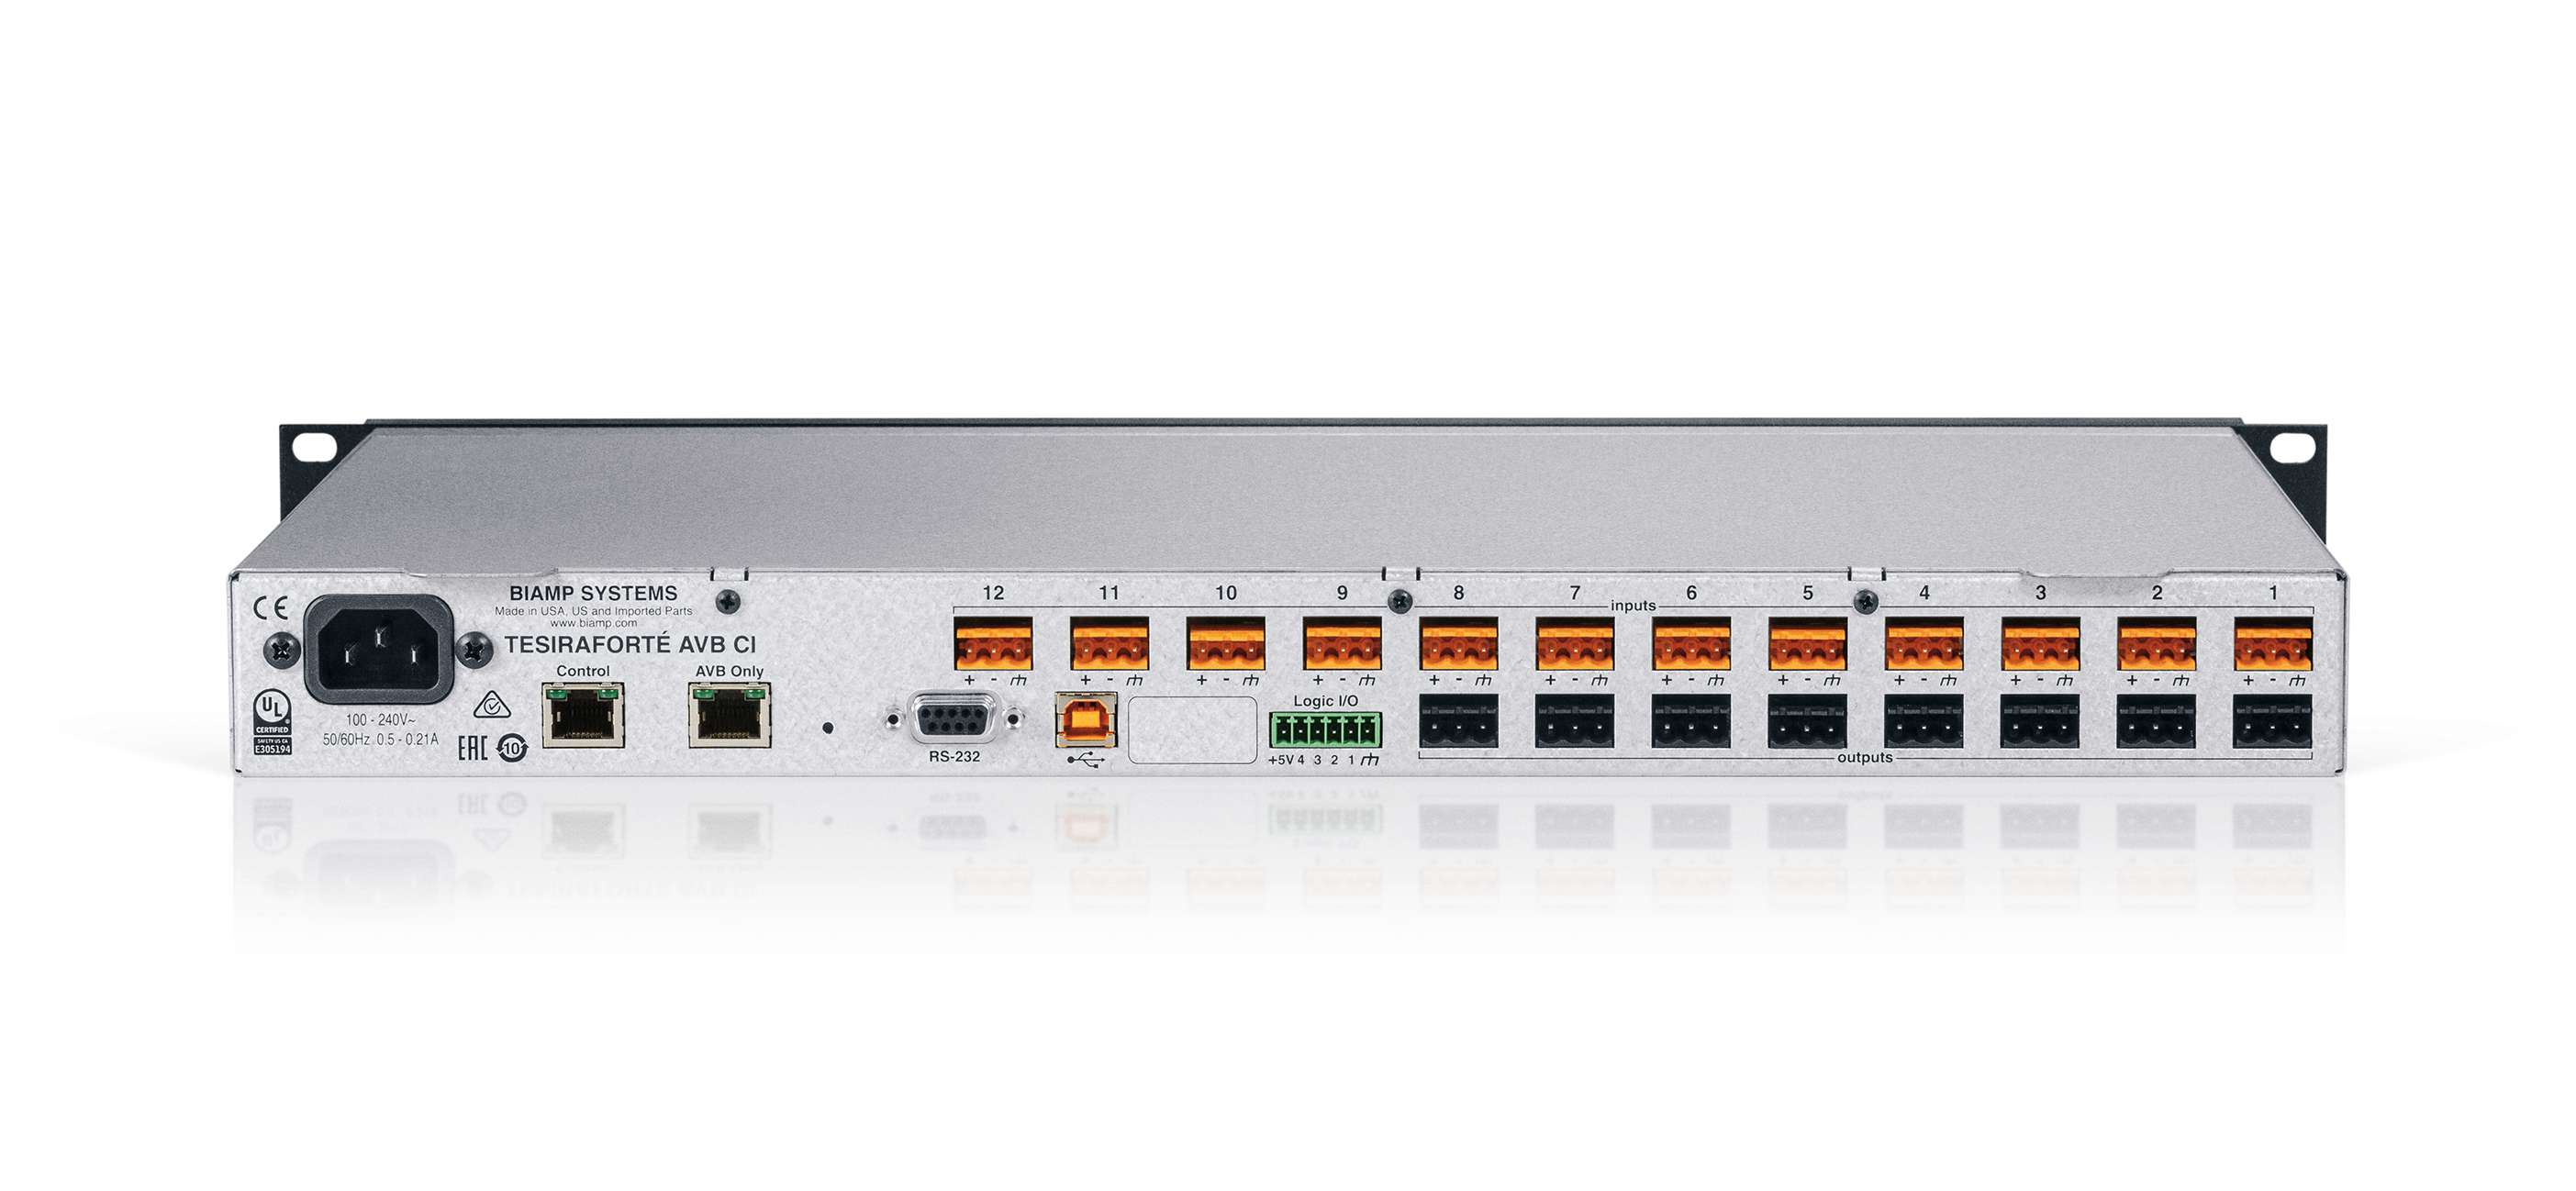 BIAMP TesiraFORTE AVB CI Procesador de audio 12 entradas 8 salidas análogas, (AEC) 8 canales de audio USB, 4 conexiones GPIO,  128 x 128 canales AVB